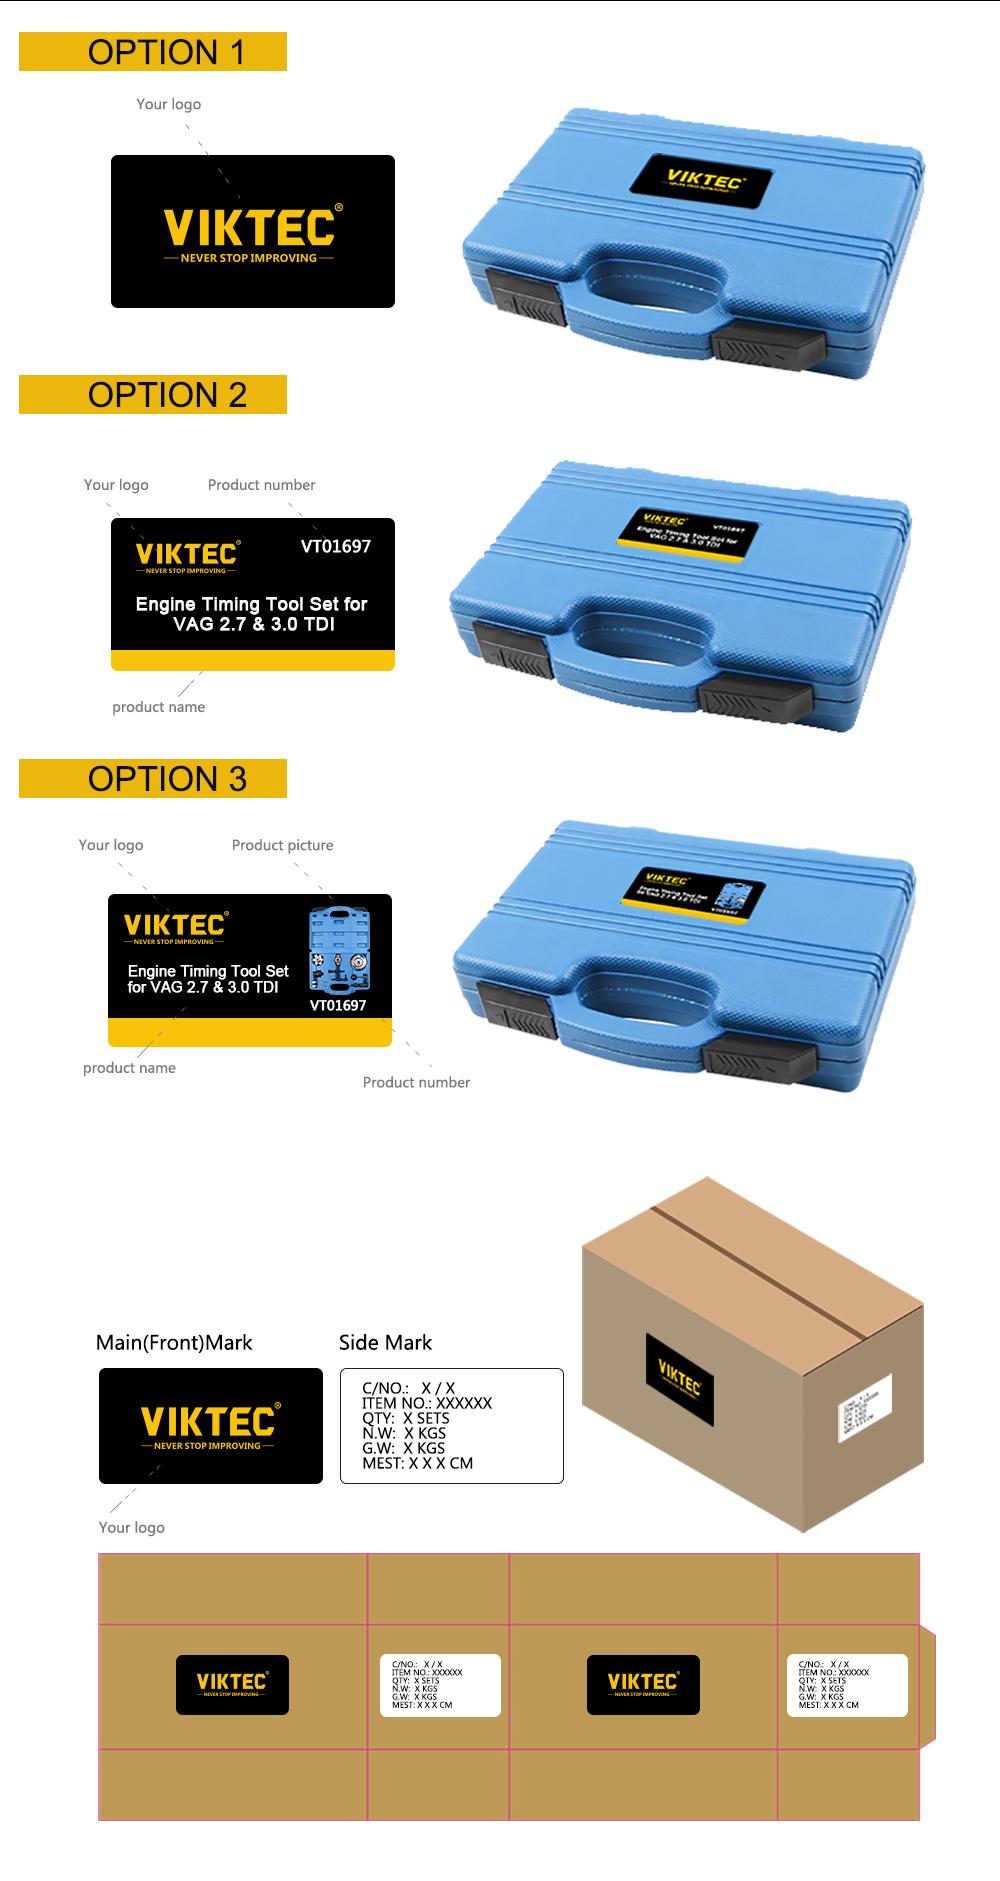 Vt01007 From Viktec 13PC Harmonic Balancer Puller Kit